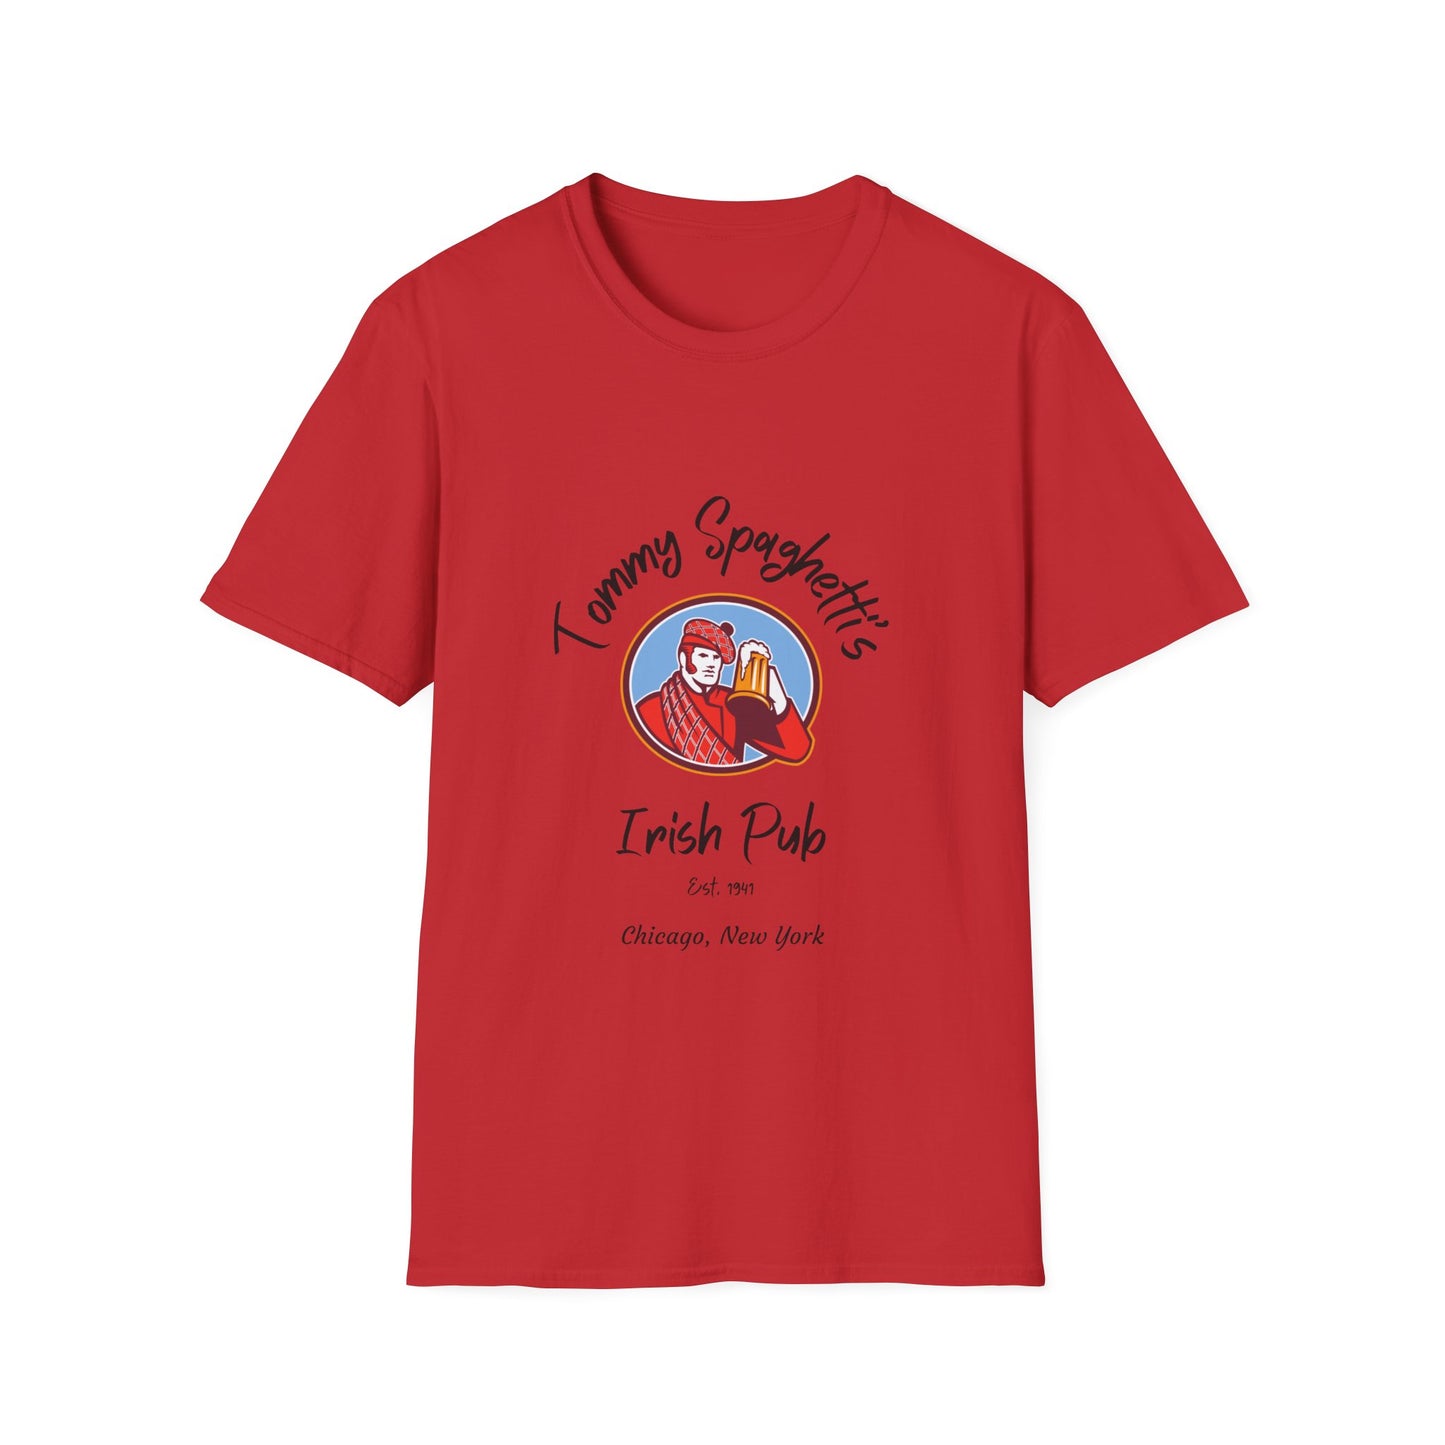 Tommy Spaghetti's Irish Pub T-Shirt